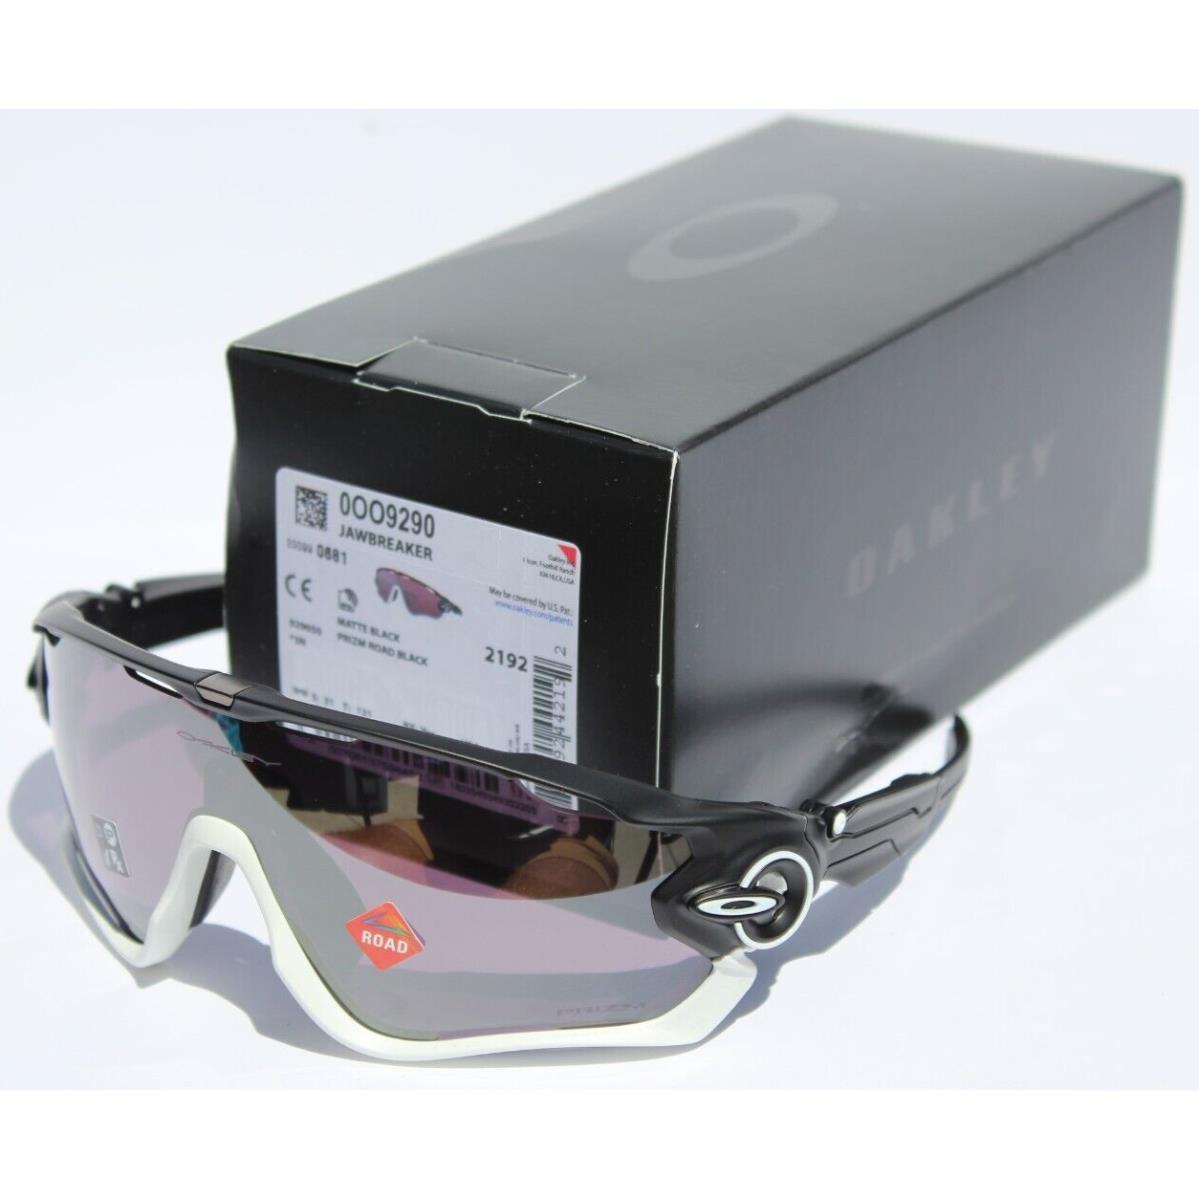 Oakley sunglasses Jawbreaker - Black Frame 5